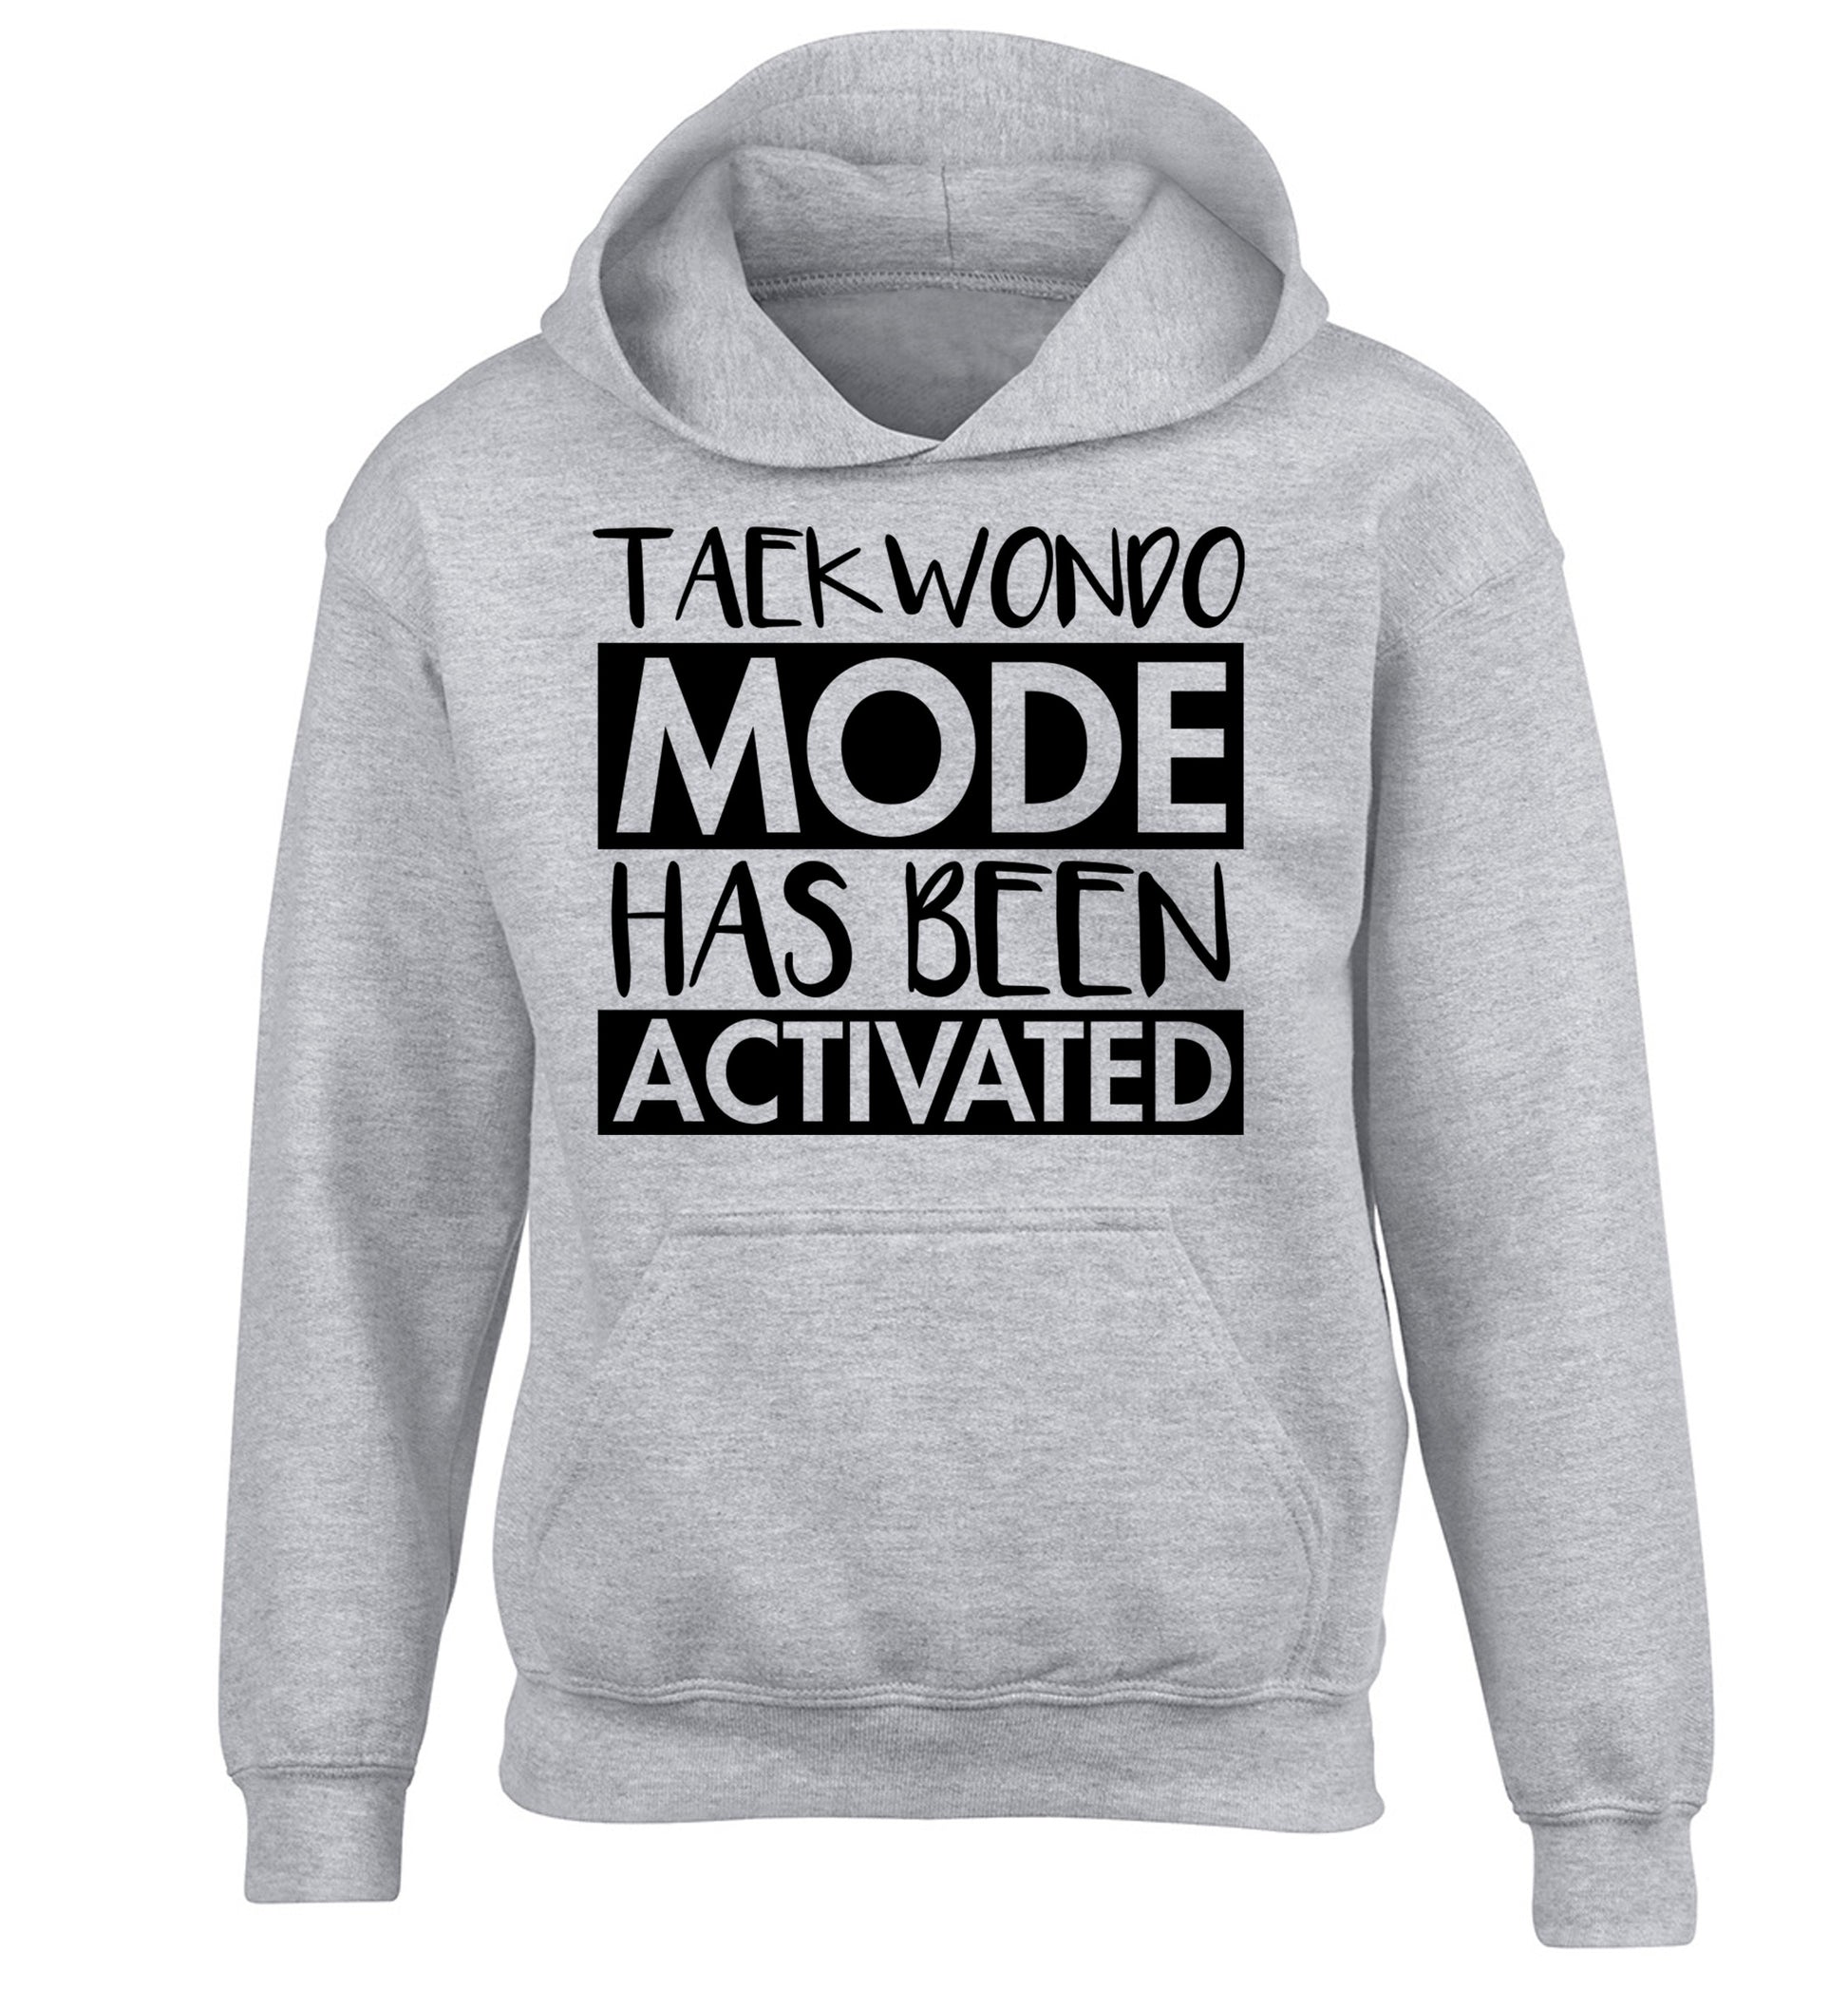 Taekwondo mode activated children's grey hoodie 12-14 Years